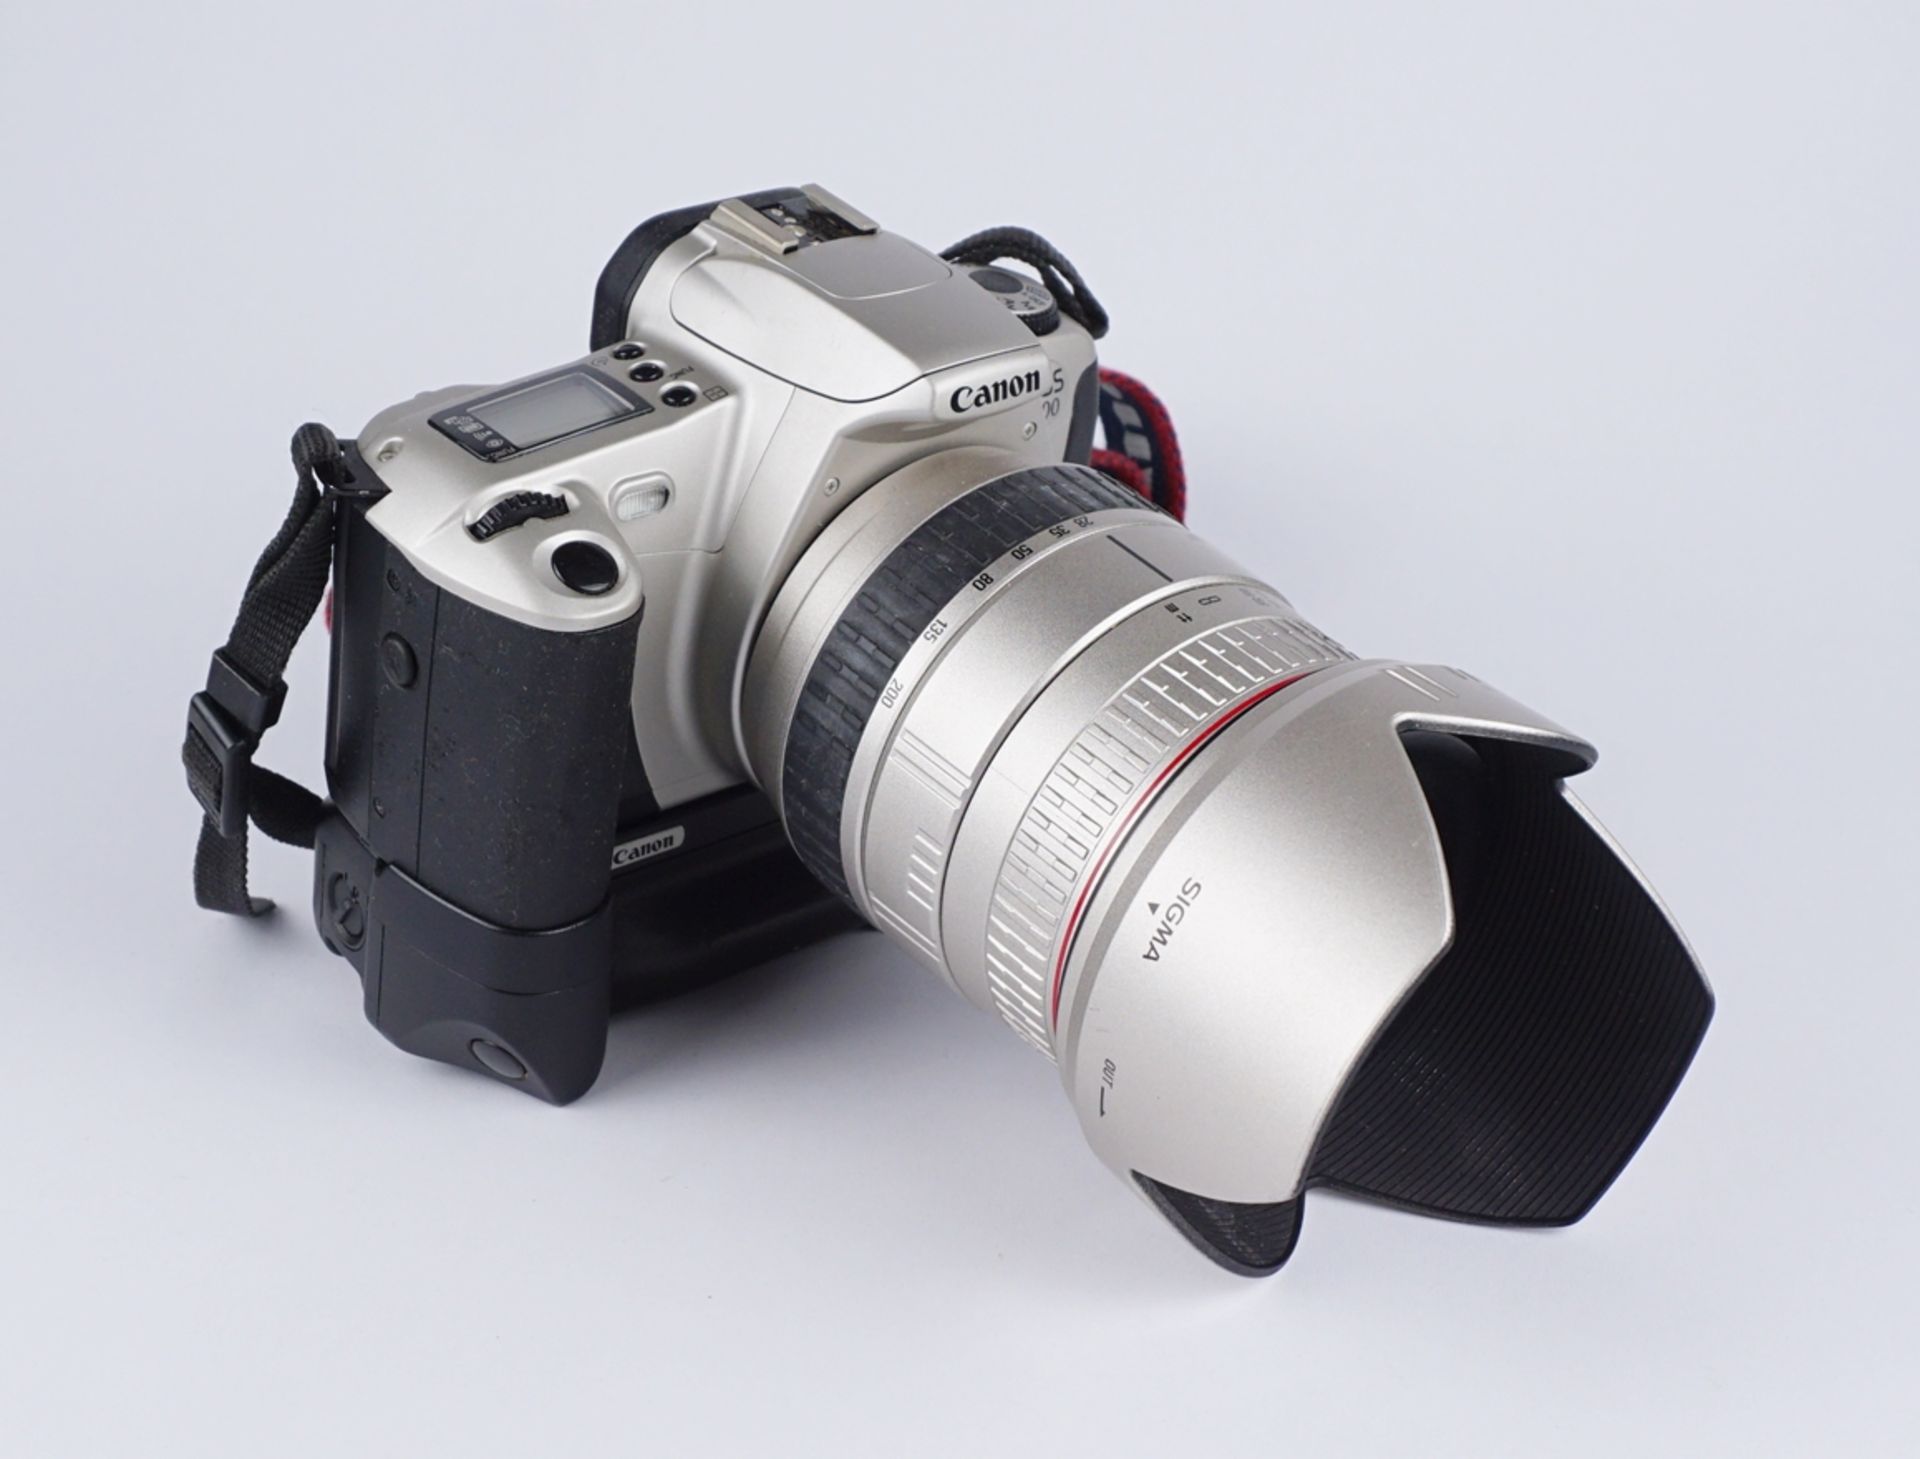 Spiegelreflexkamera Canon EOS 300 und 3 Objektive, dazu Blitzlicht Exakta 300 AF